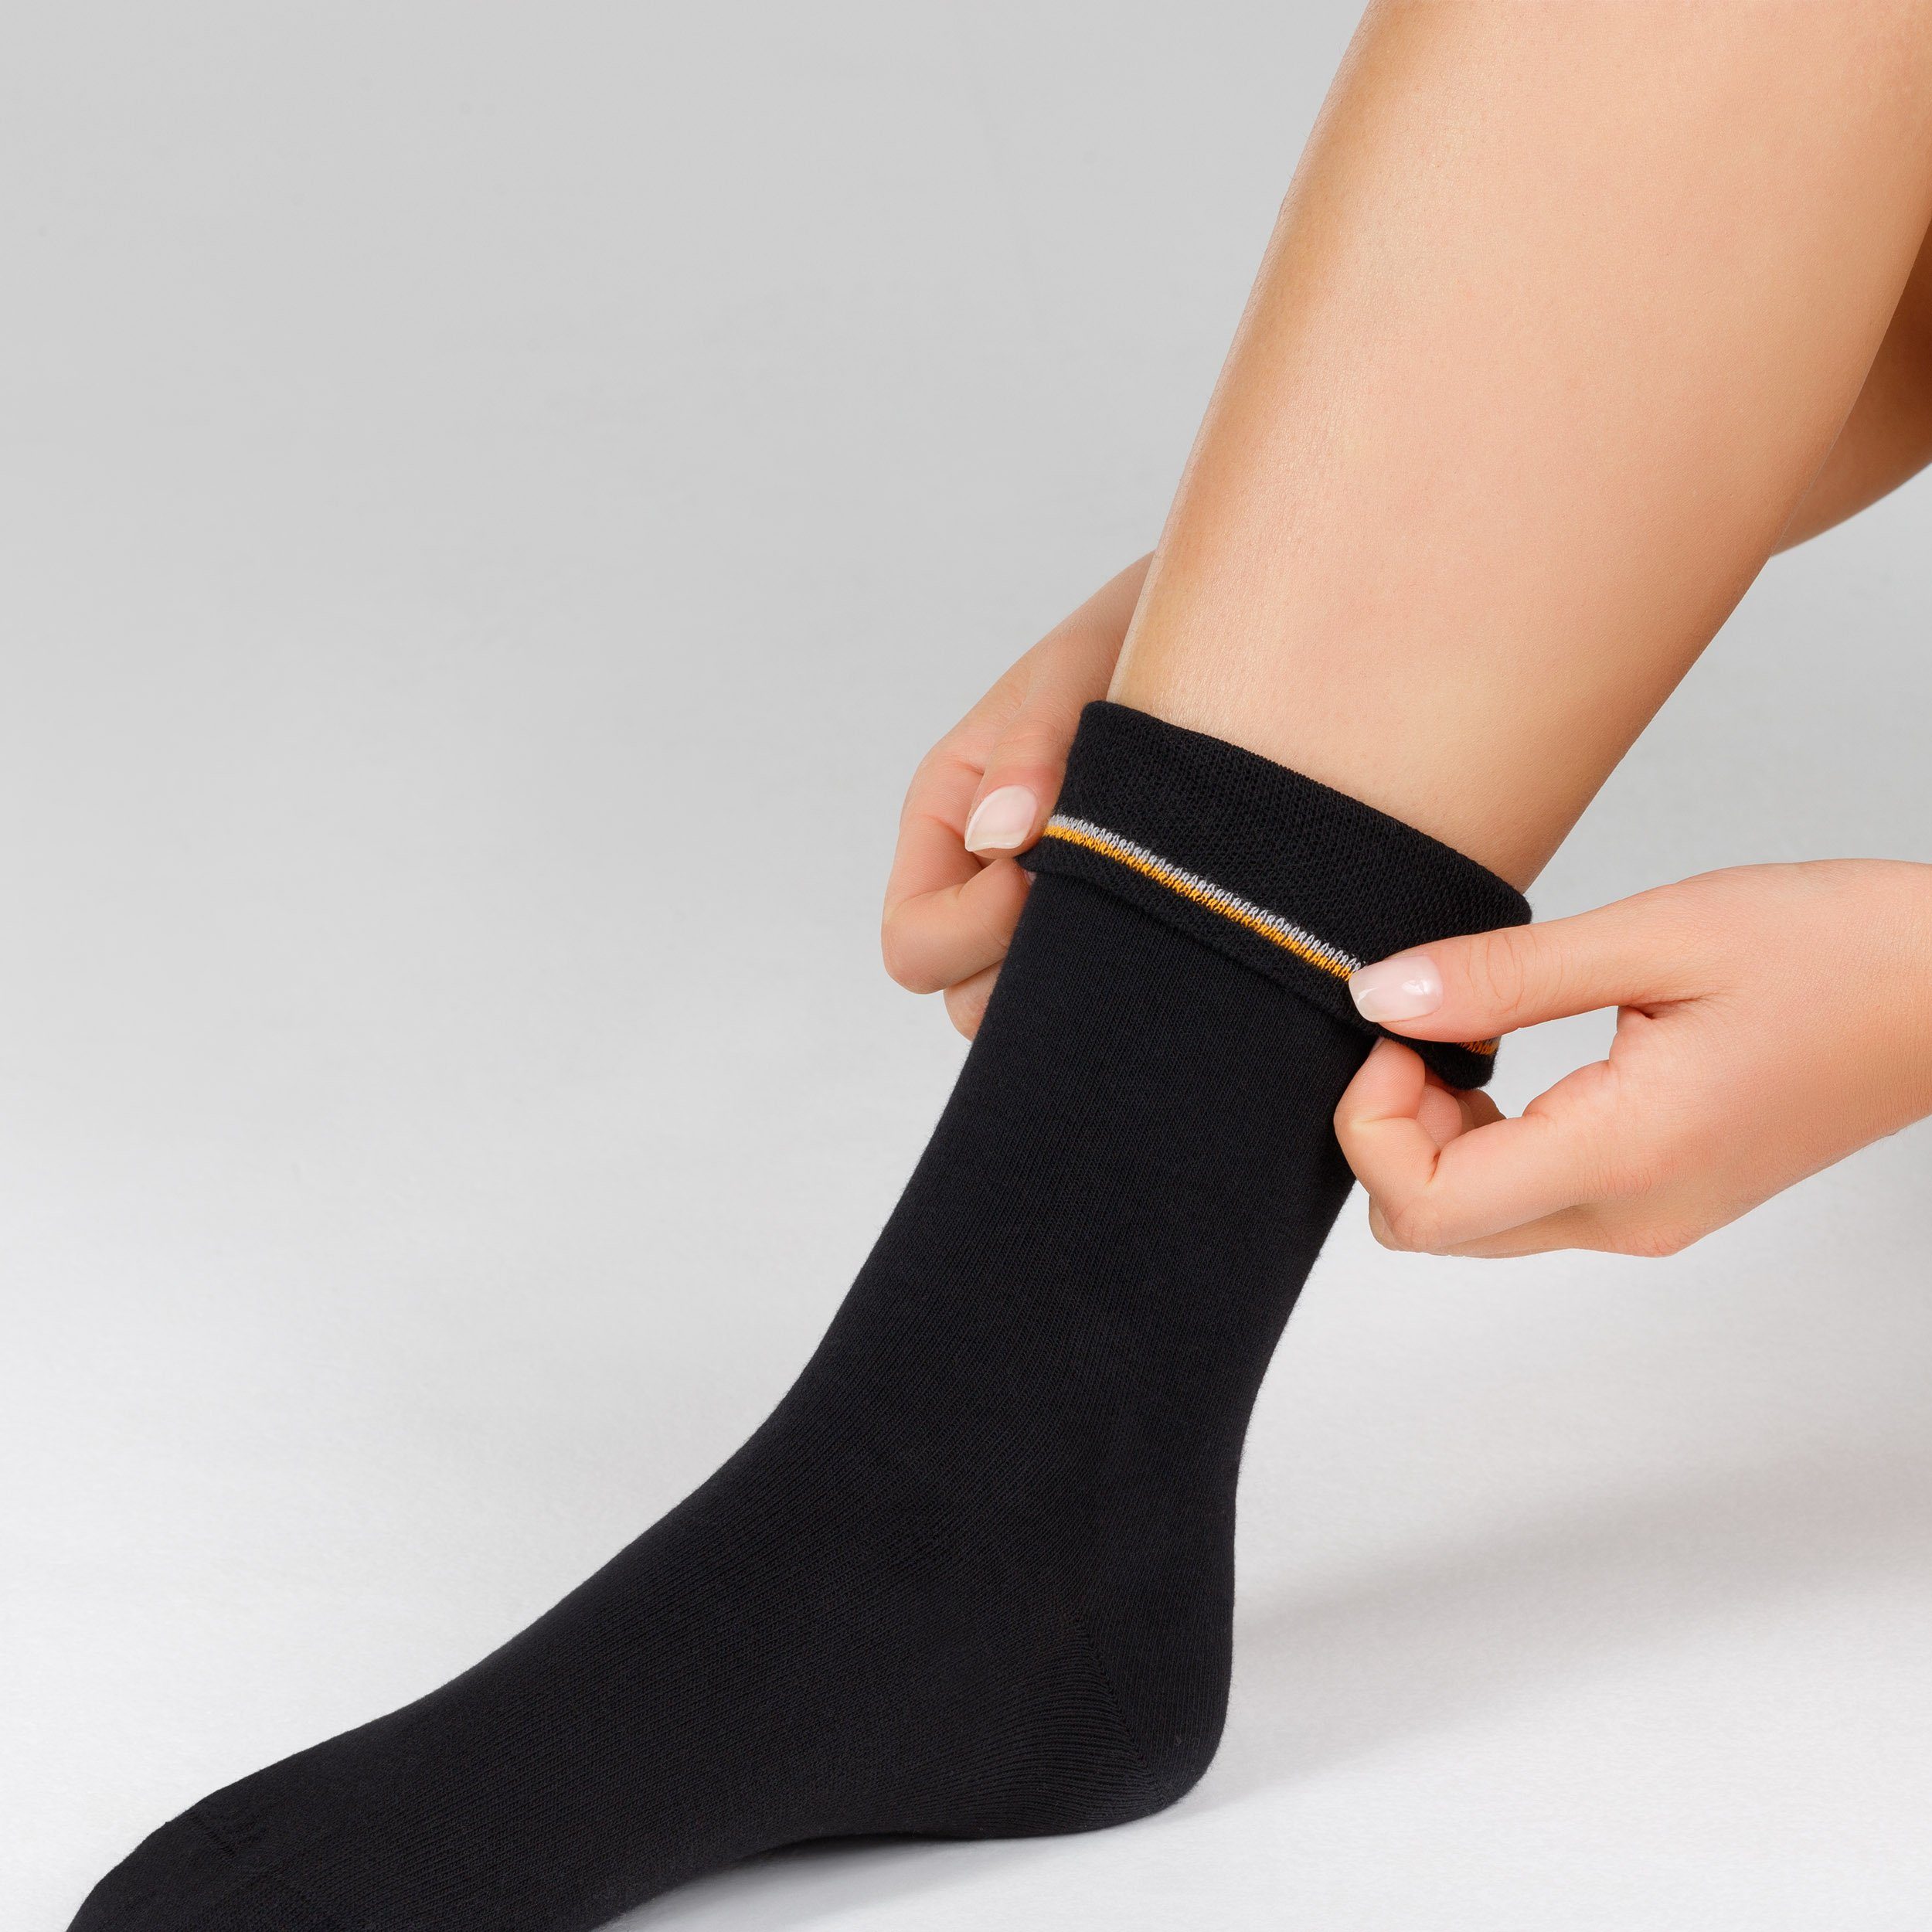 Camano anthrazit Socken Komfortbund mit (7-Paar) weichem ca-soft